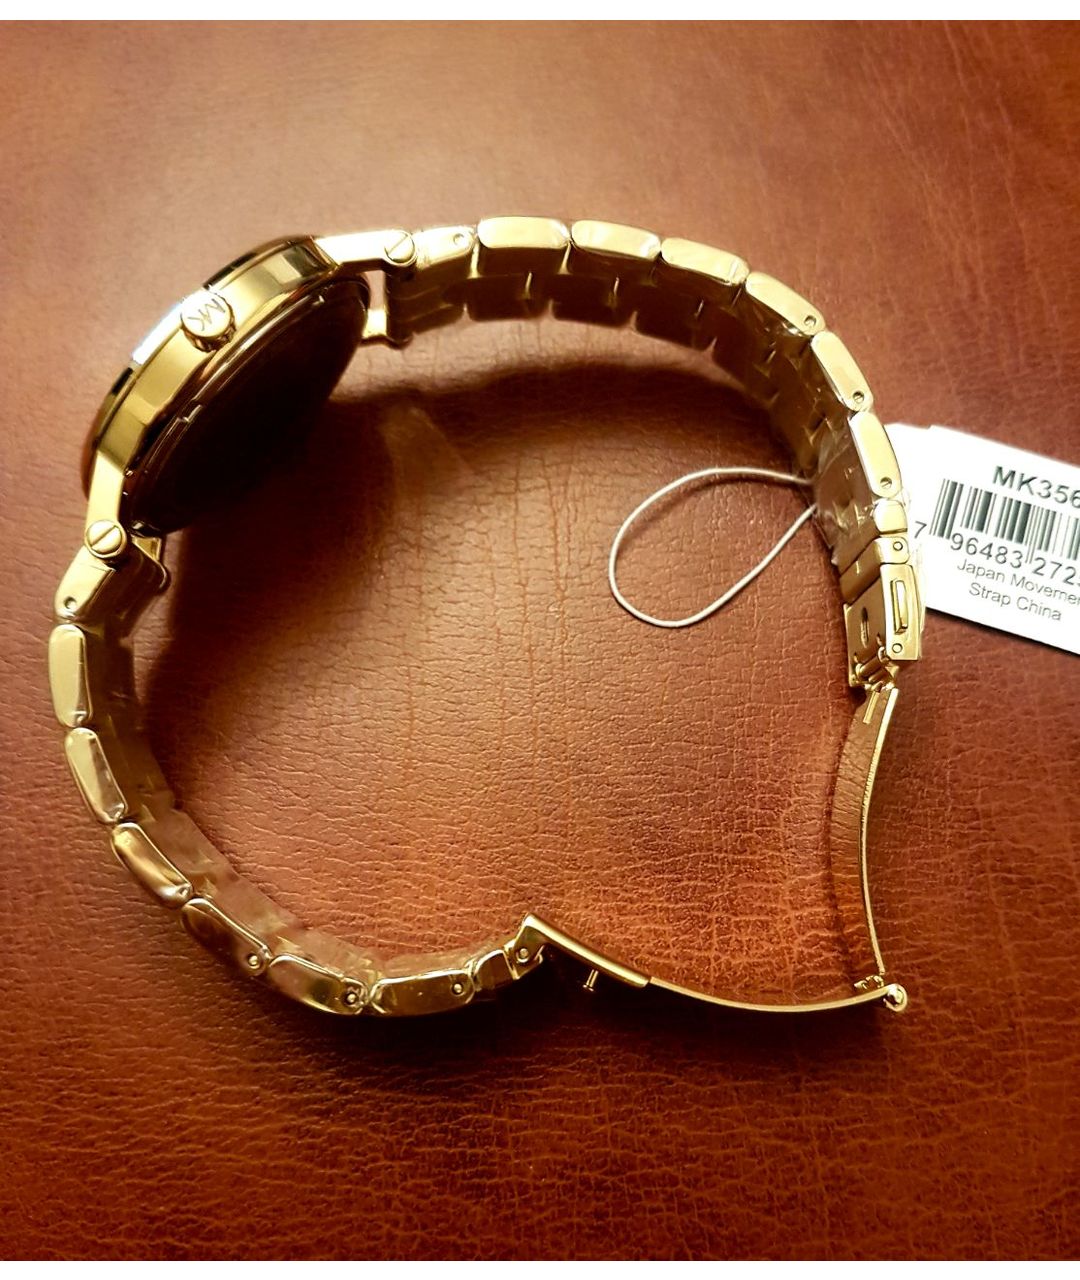 MICHAEL KORS Золотые стальные часы, фото 4